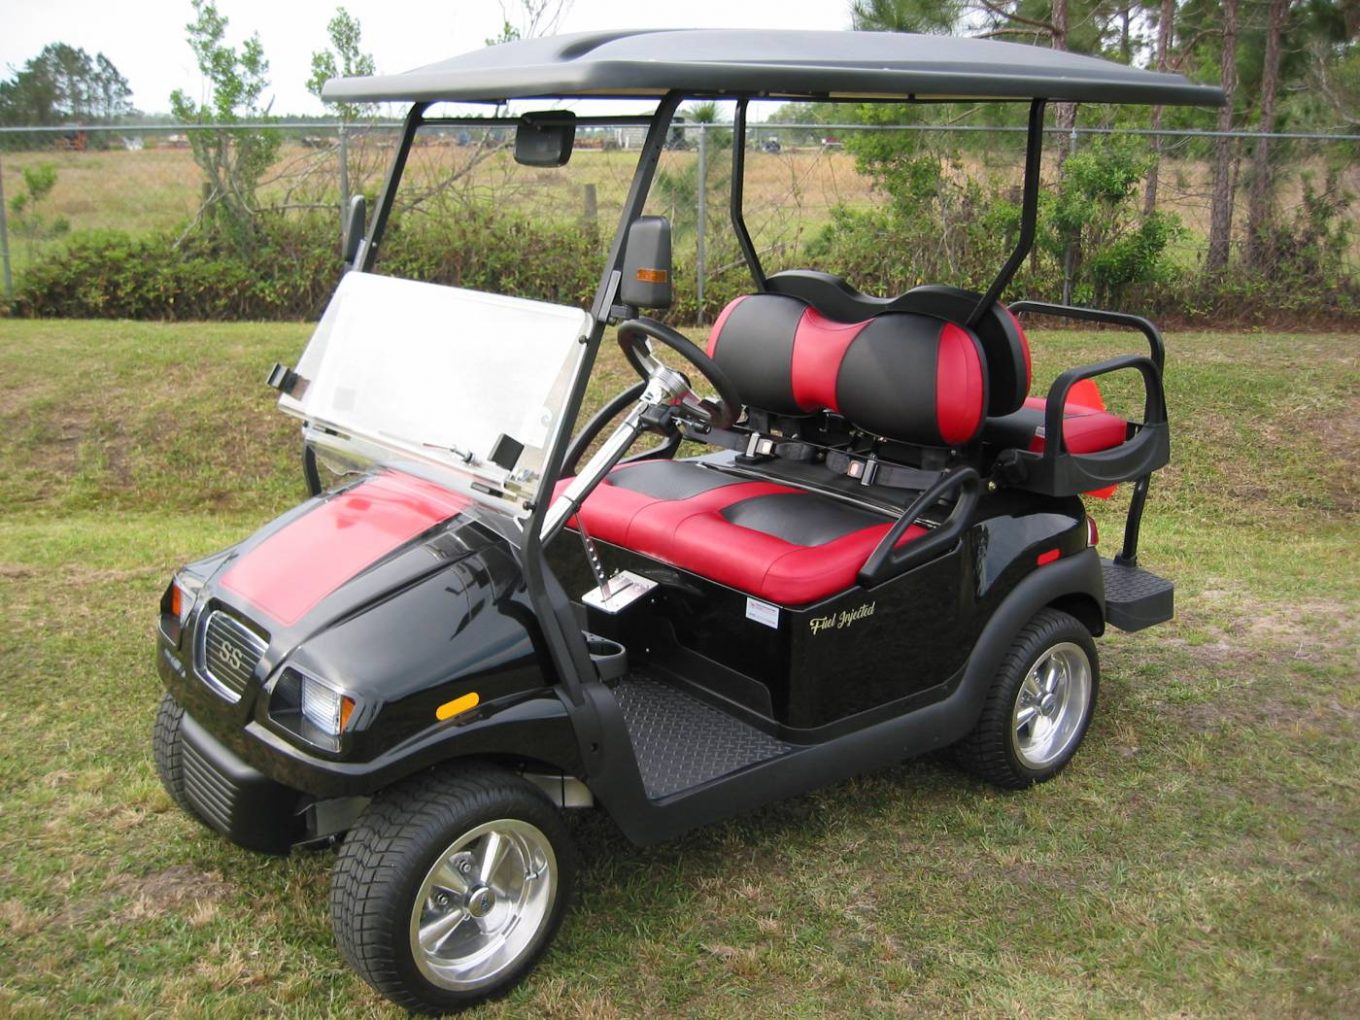 Who Makes Vitacci Golf Carts